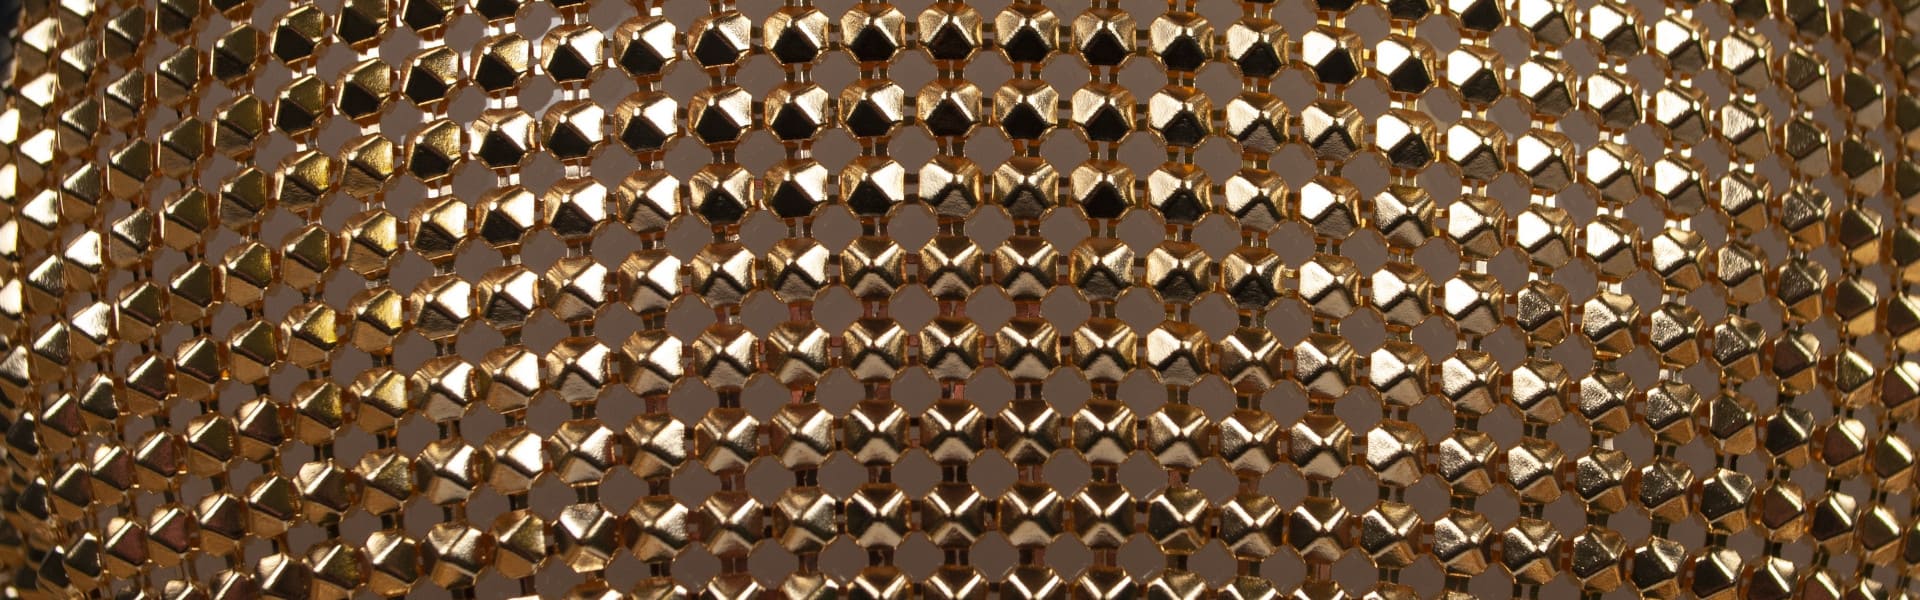 maglia metallica in ottone